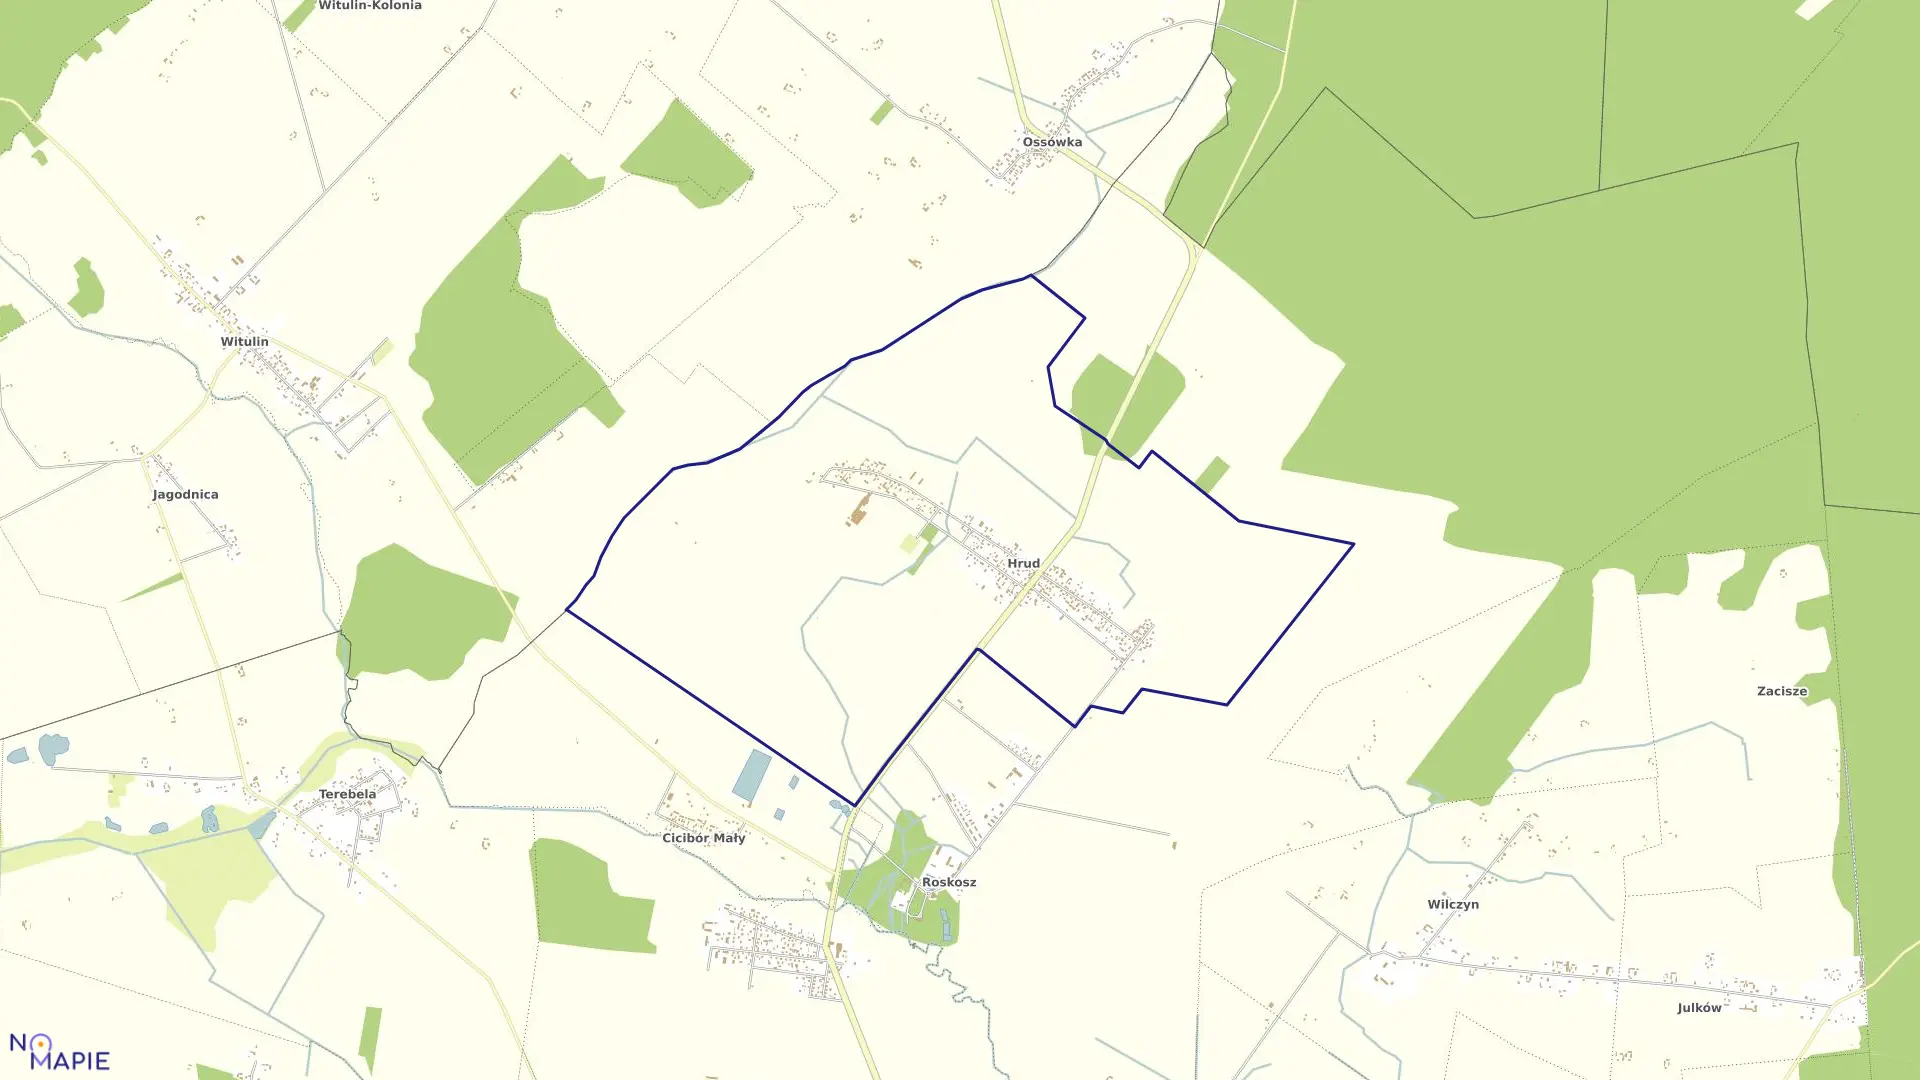 Mapa obrębu HRUD w gminie Biała Podlaska